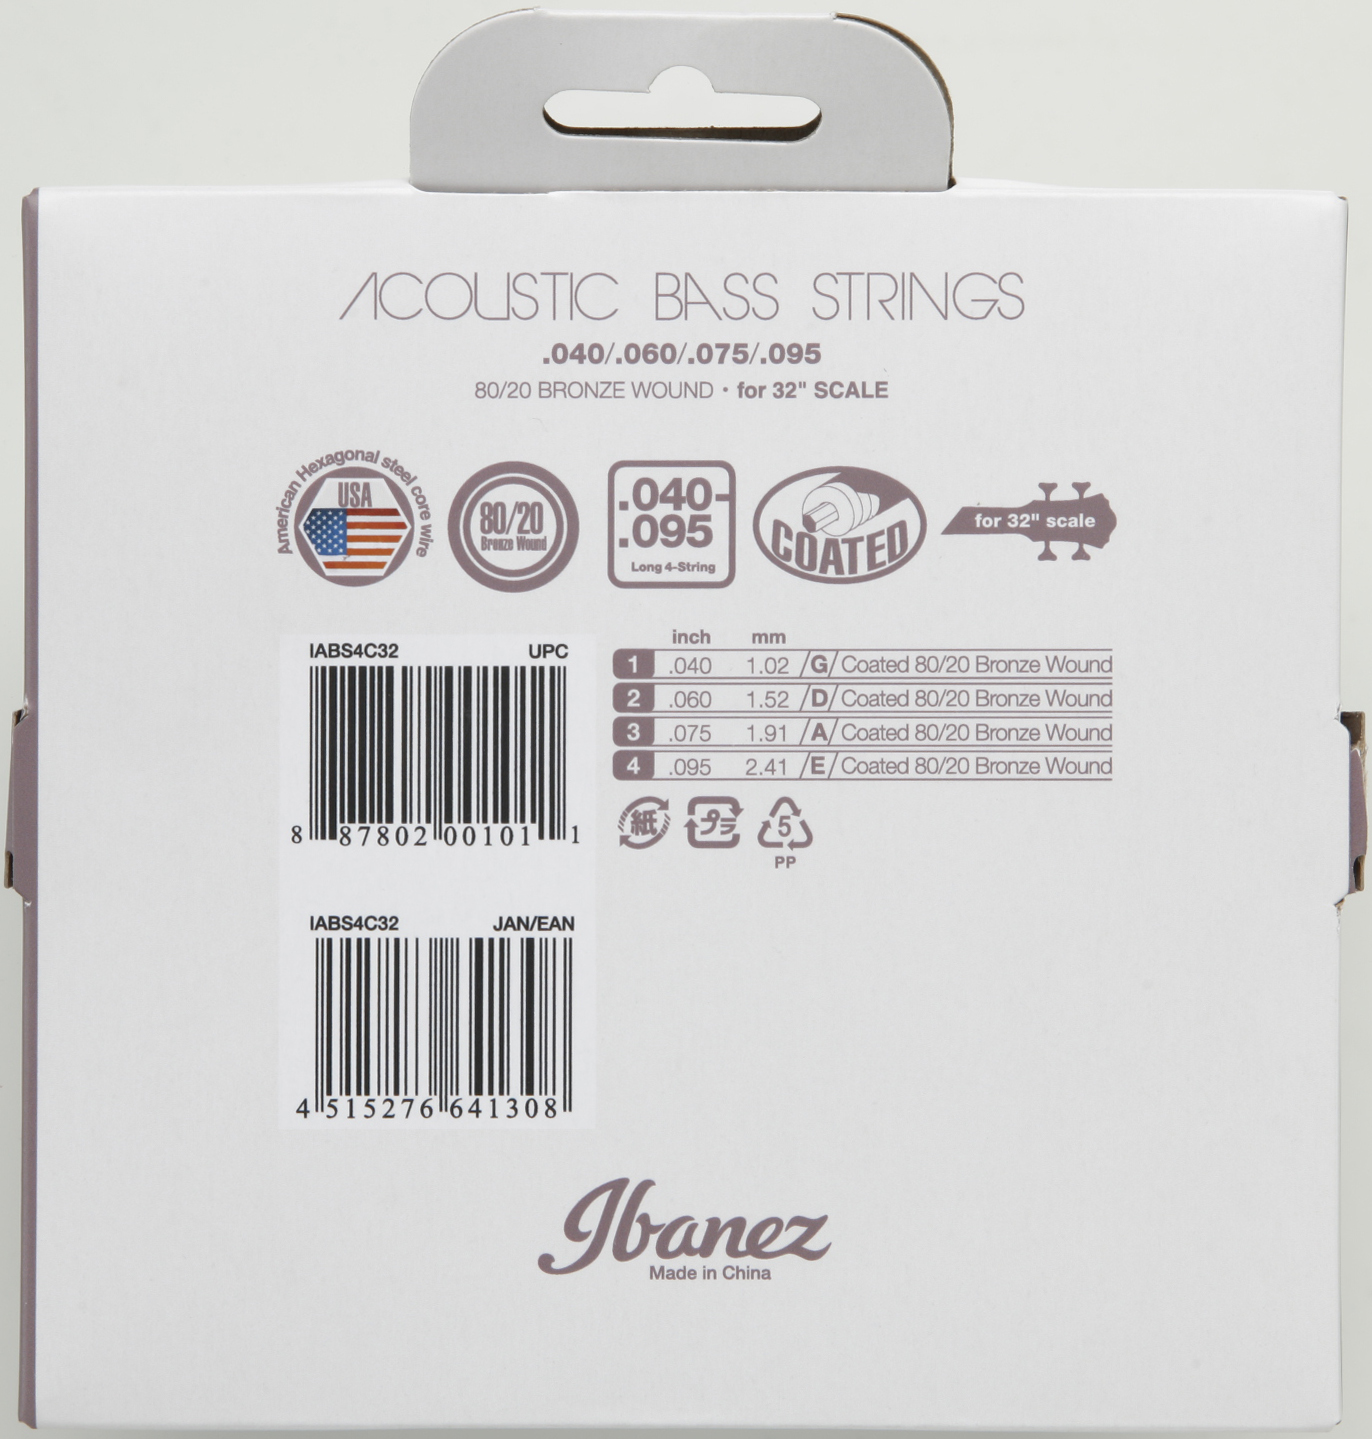 Ibanez IABS4C32 струны для акустического баса, 40-95, лёгкое натяжение